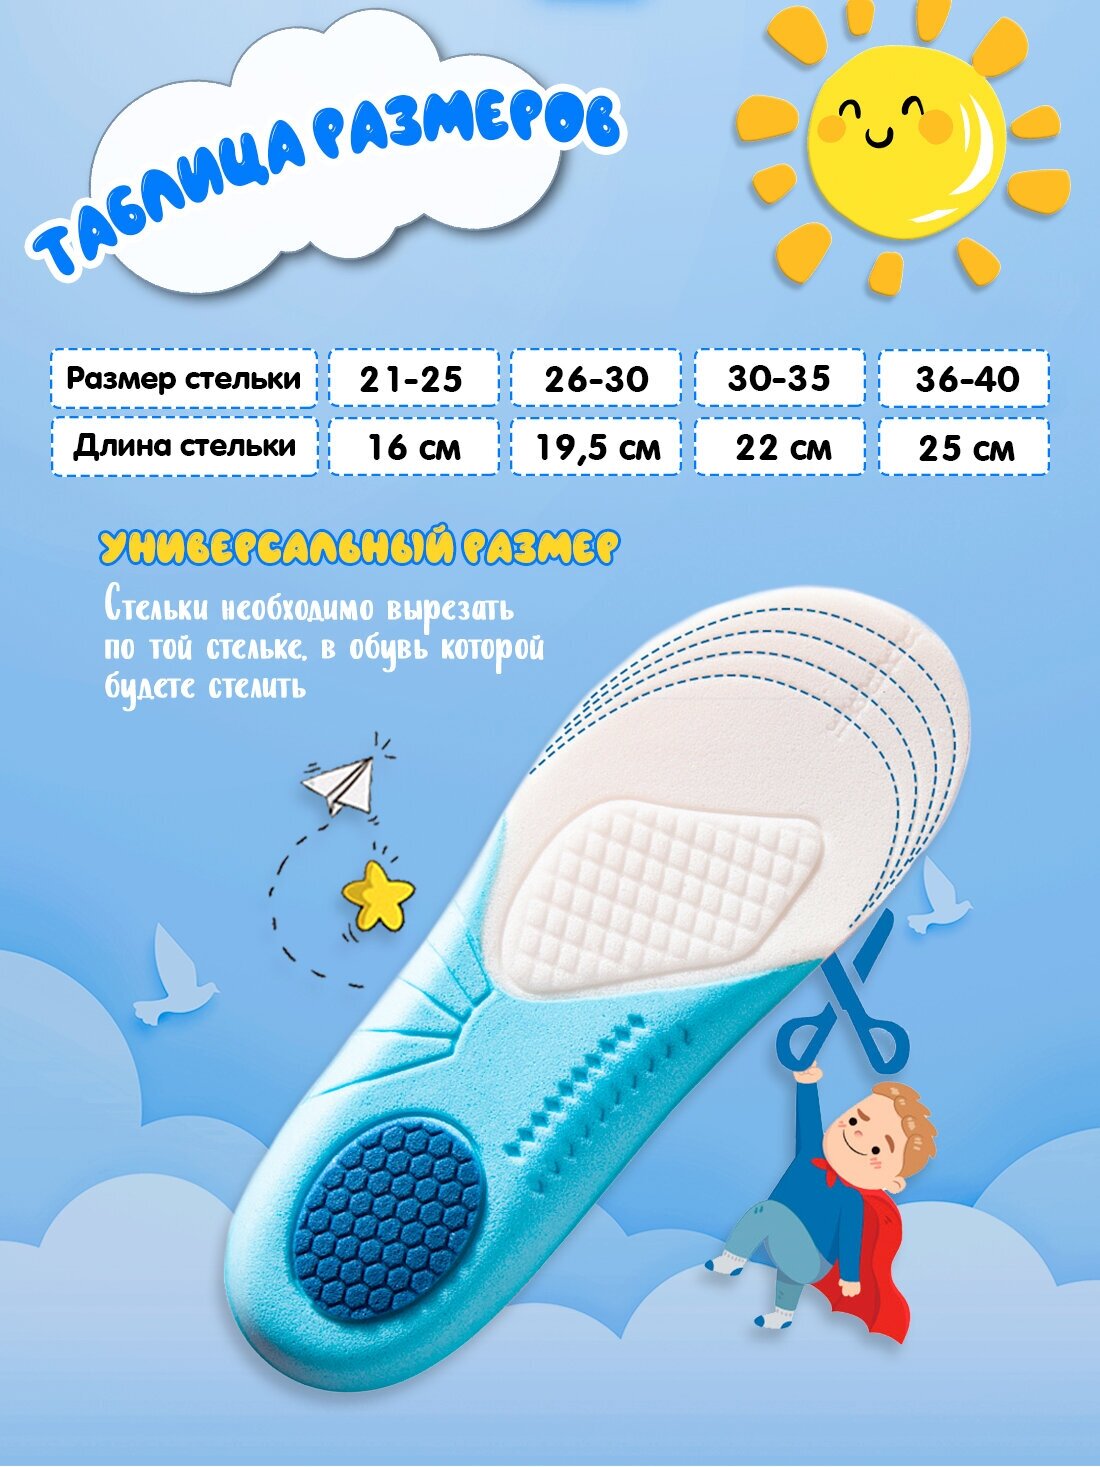 Стельки детские Super Feet для обуви мягкие дышащие Размер 21-25 (16 см)